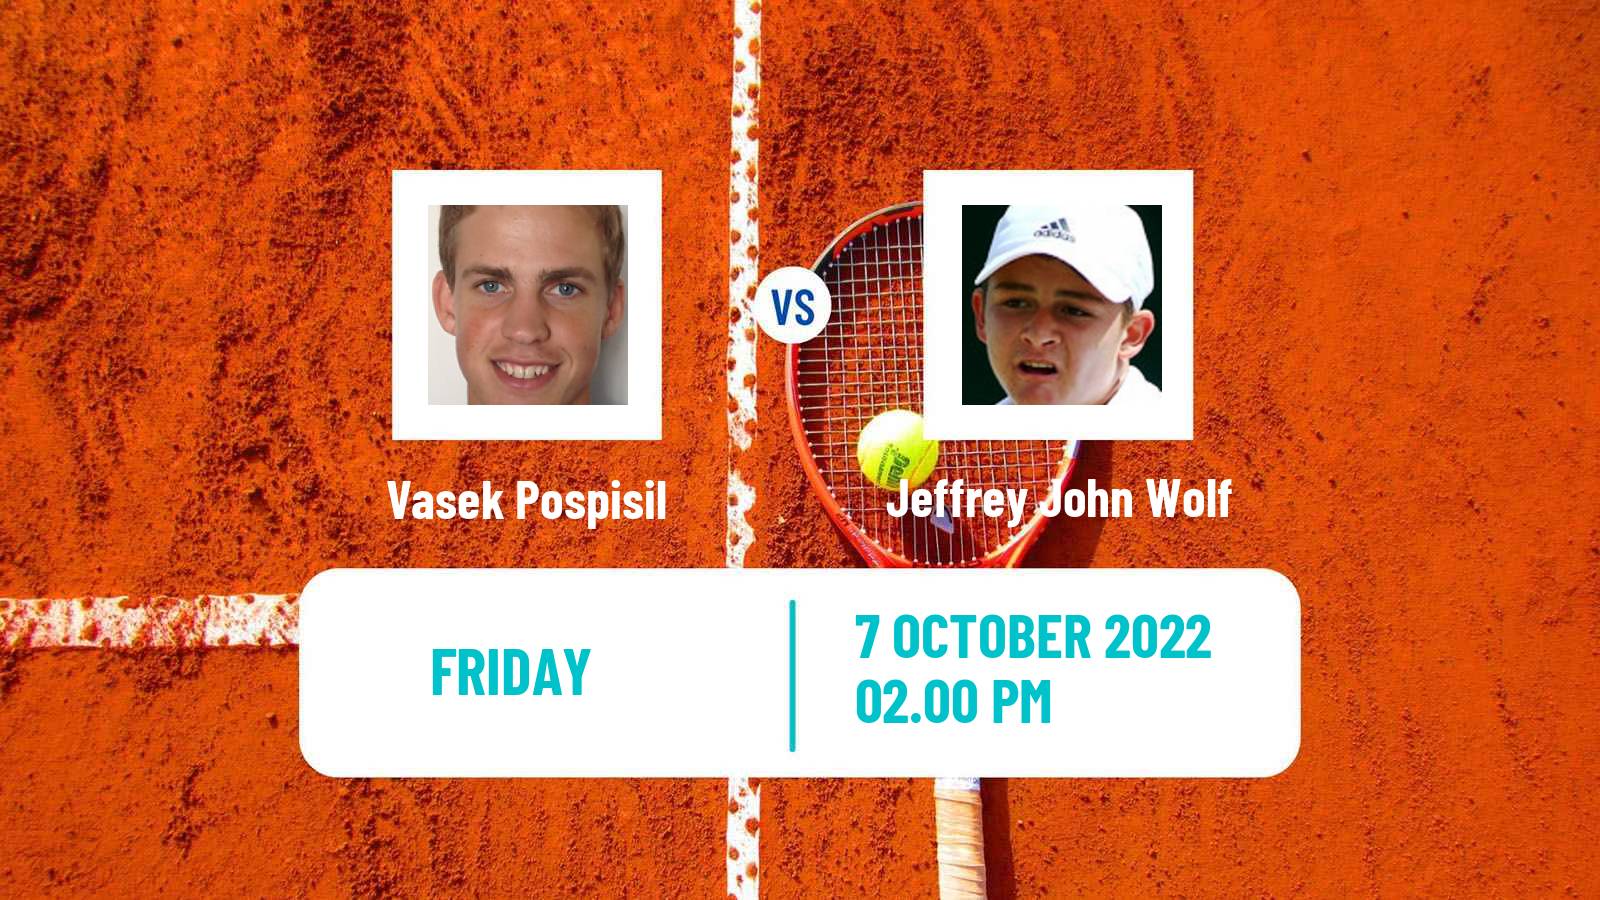 Tennis ATP Challenger Vasek Pospisil - Jeffrey John Wolf